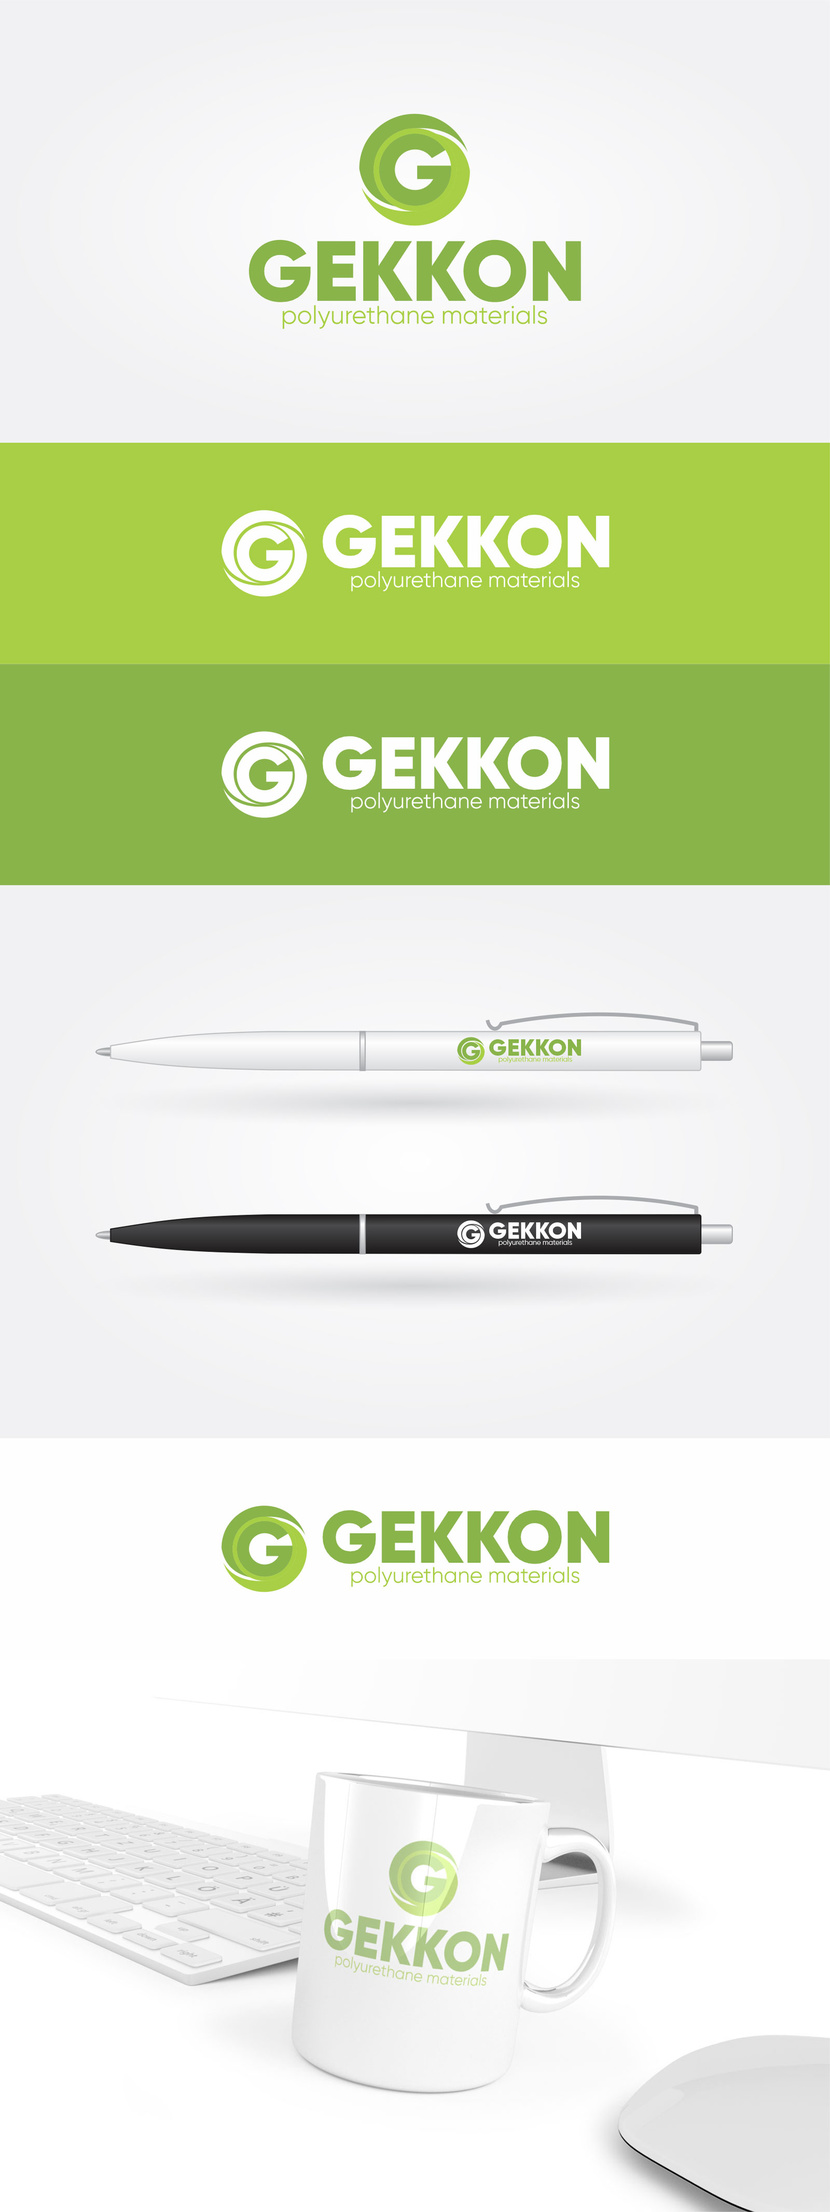 Логотип для производства полиуретановых материалов марки "Gekkon"  -  автор Павел Макарь